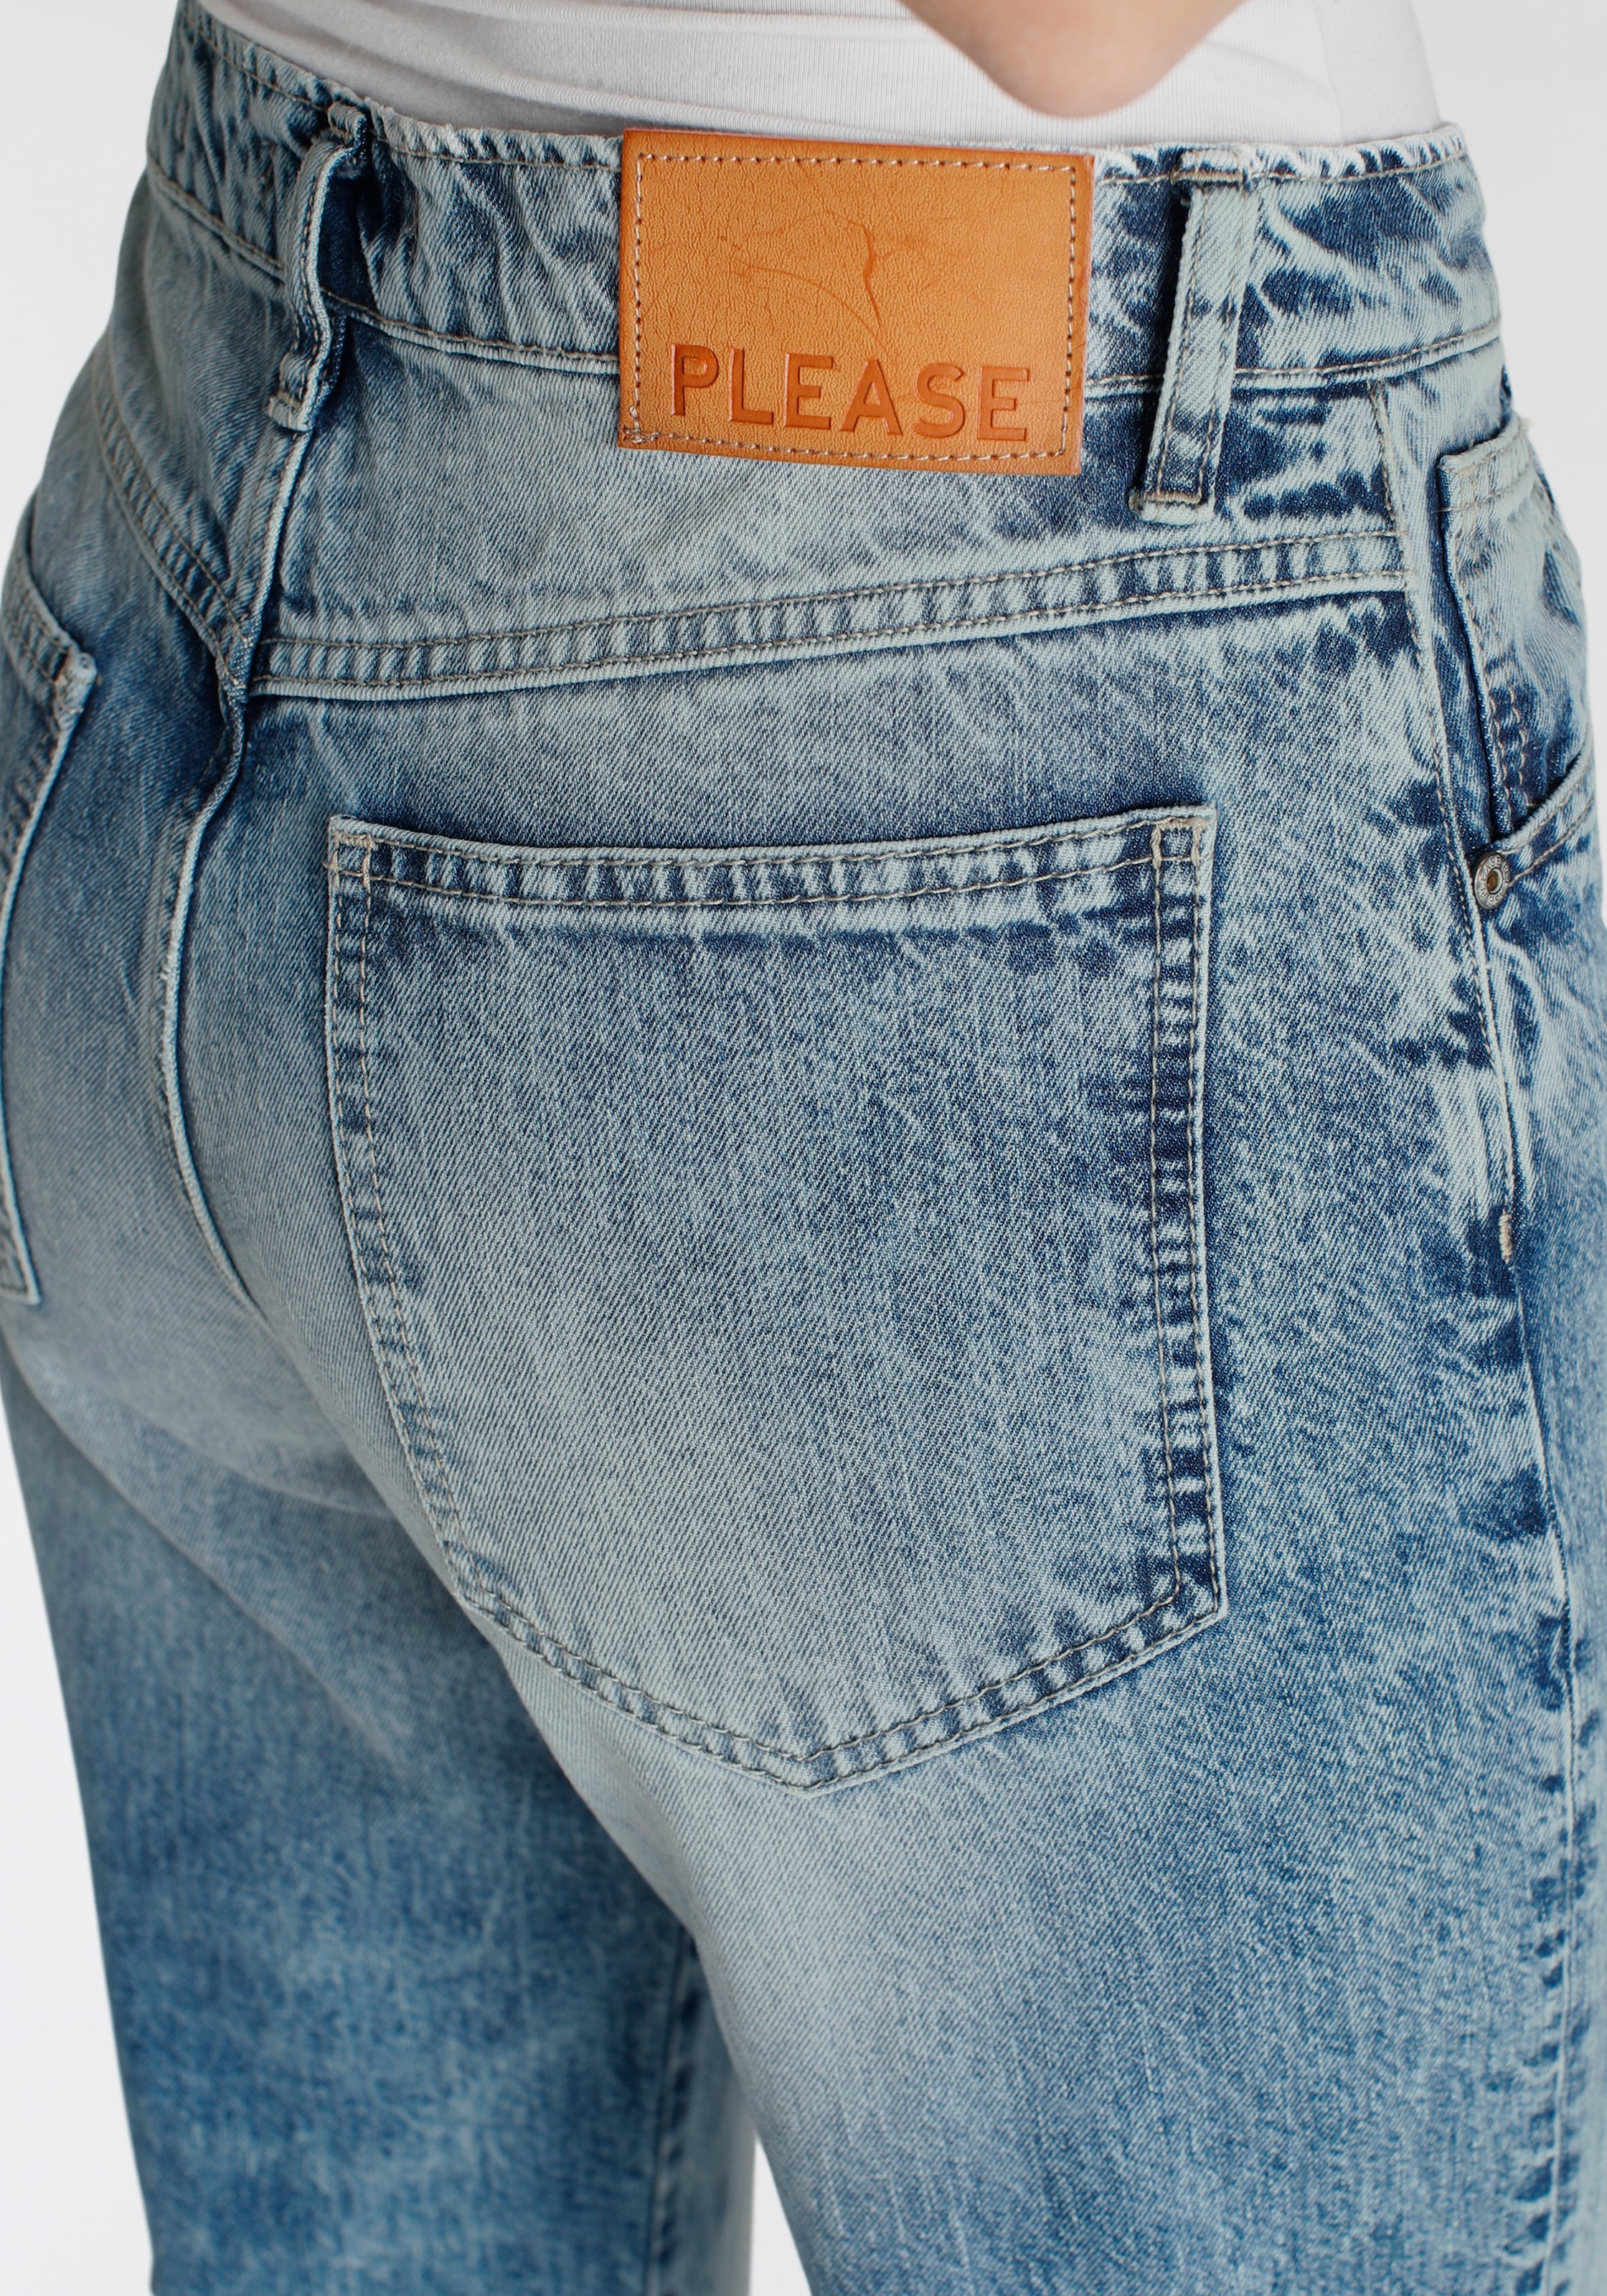 Please Jeans Boyfriend-Hose bei OTTO kaufen